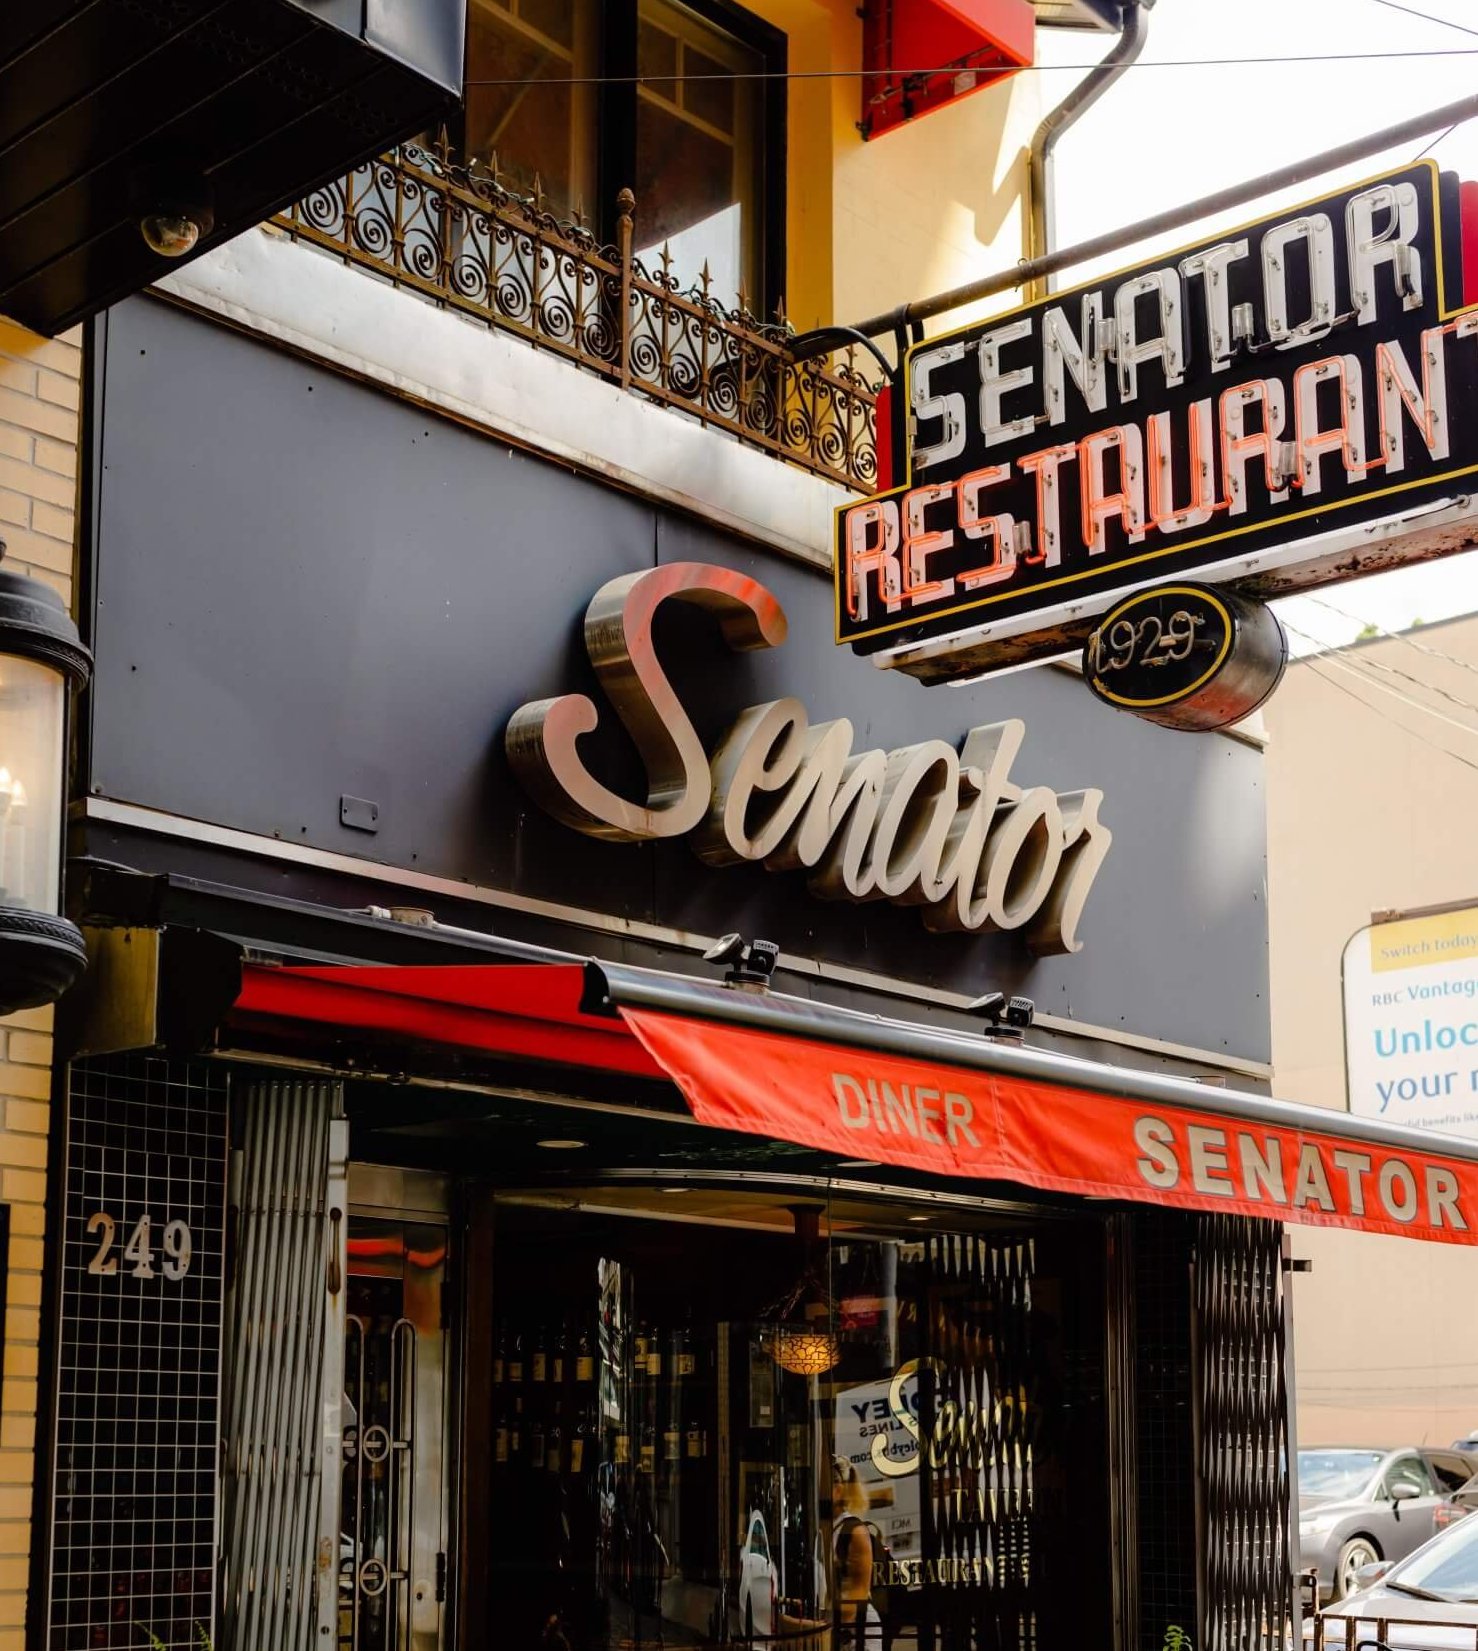 A retro storefront called The Senator